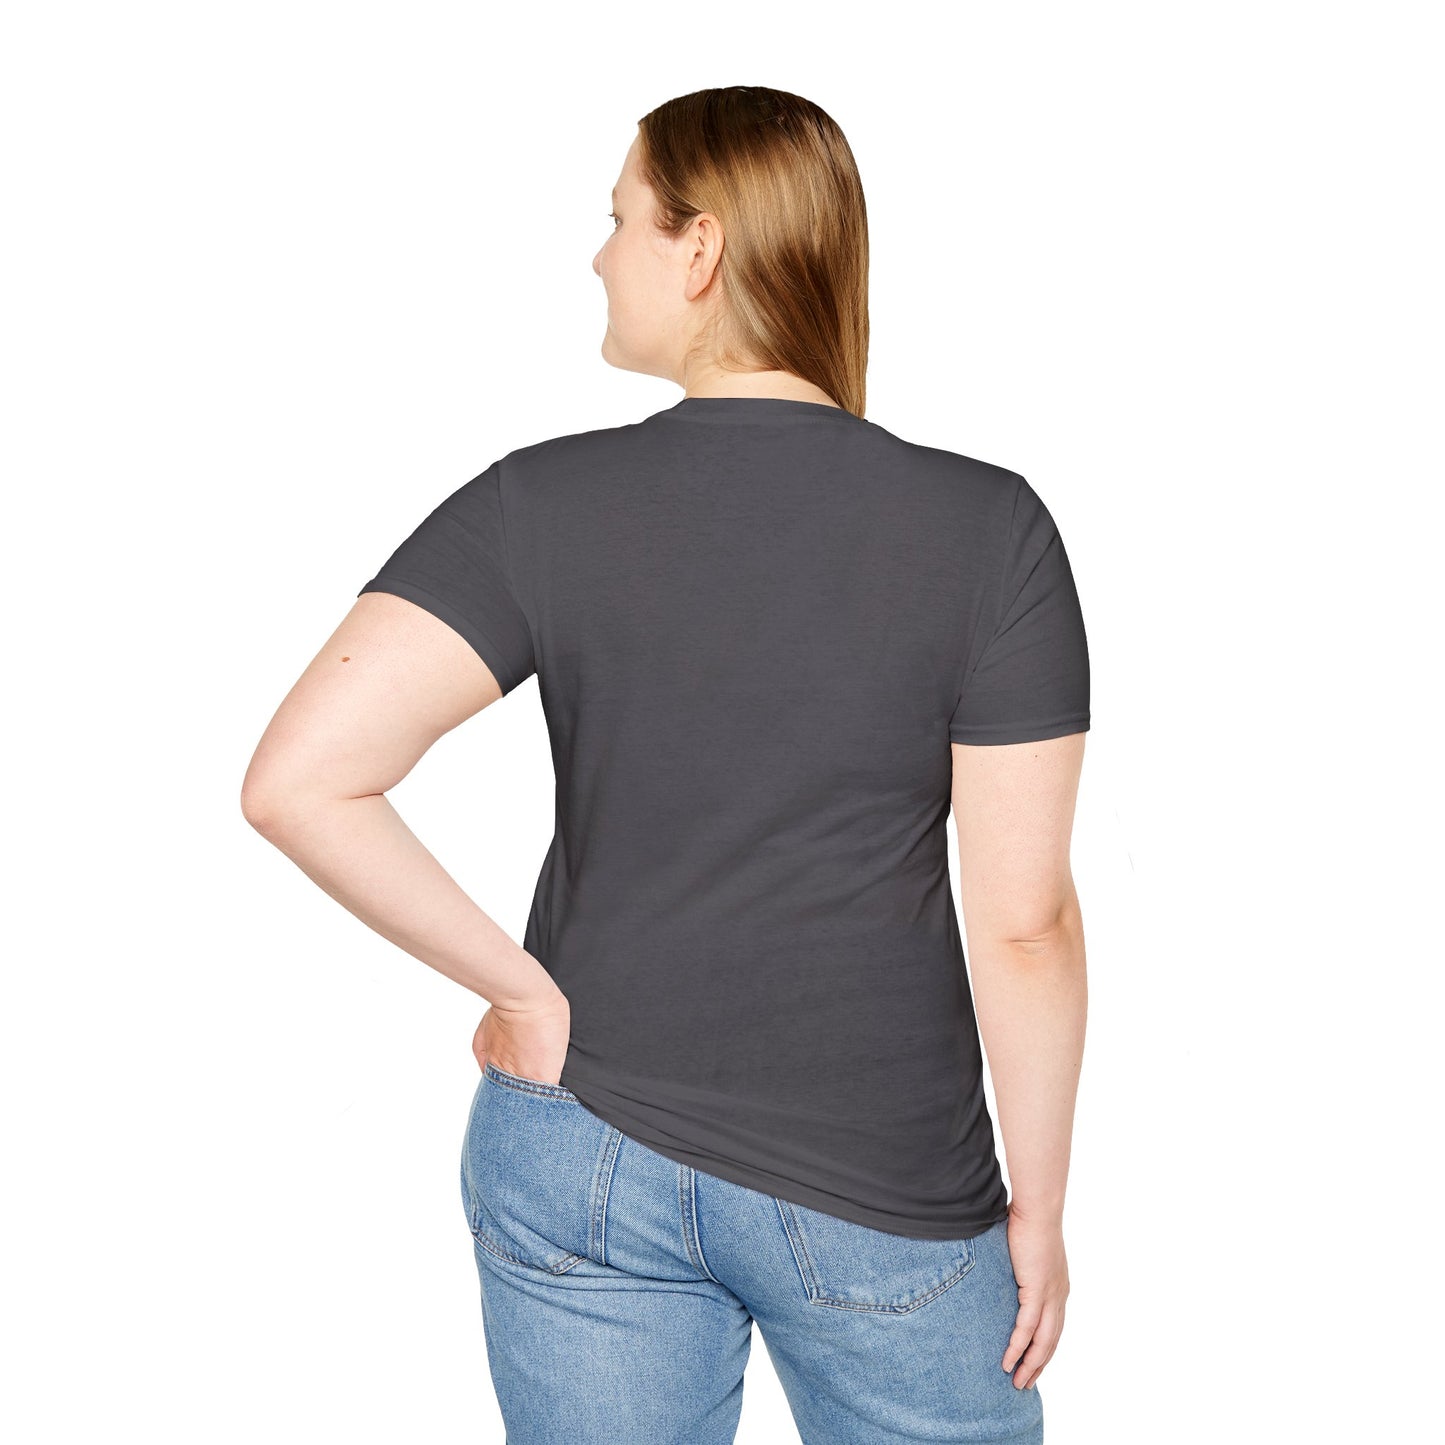 Slug Wiseman - Futsy Marlone's Signature Pose Unisex Softstyle T-Shirt